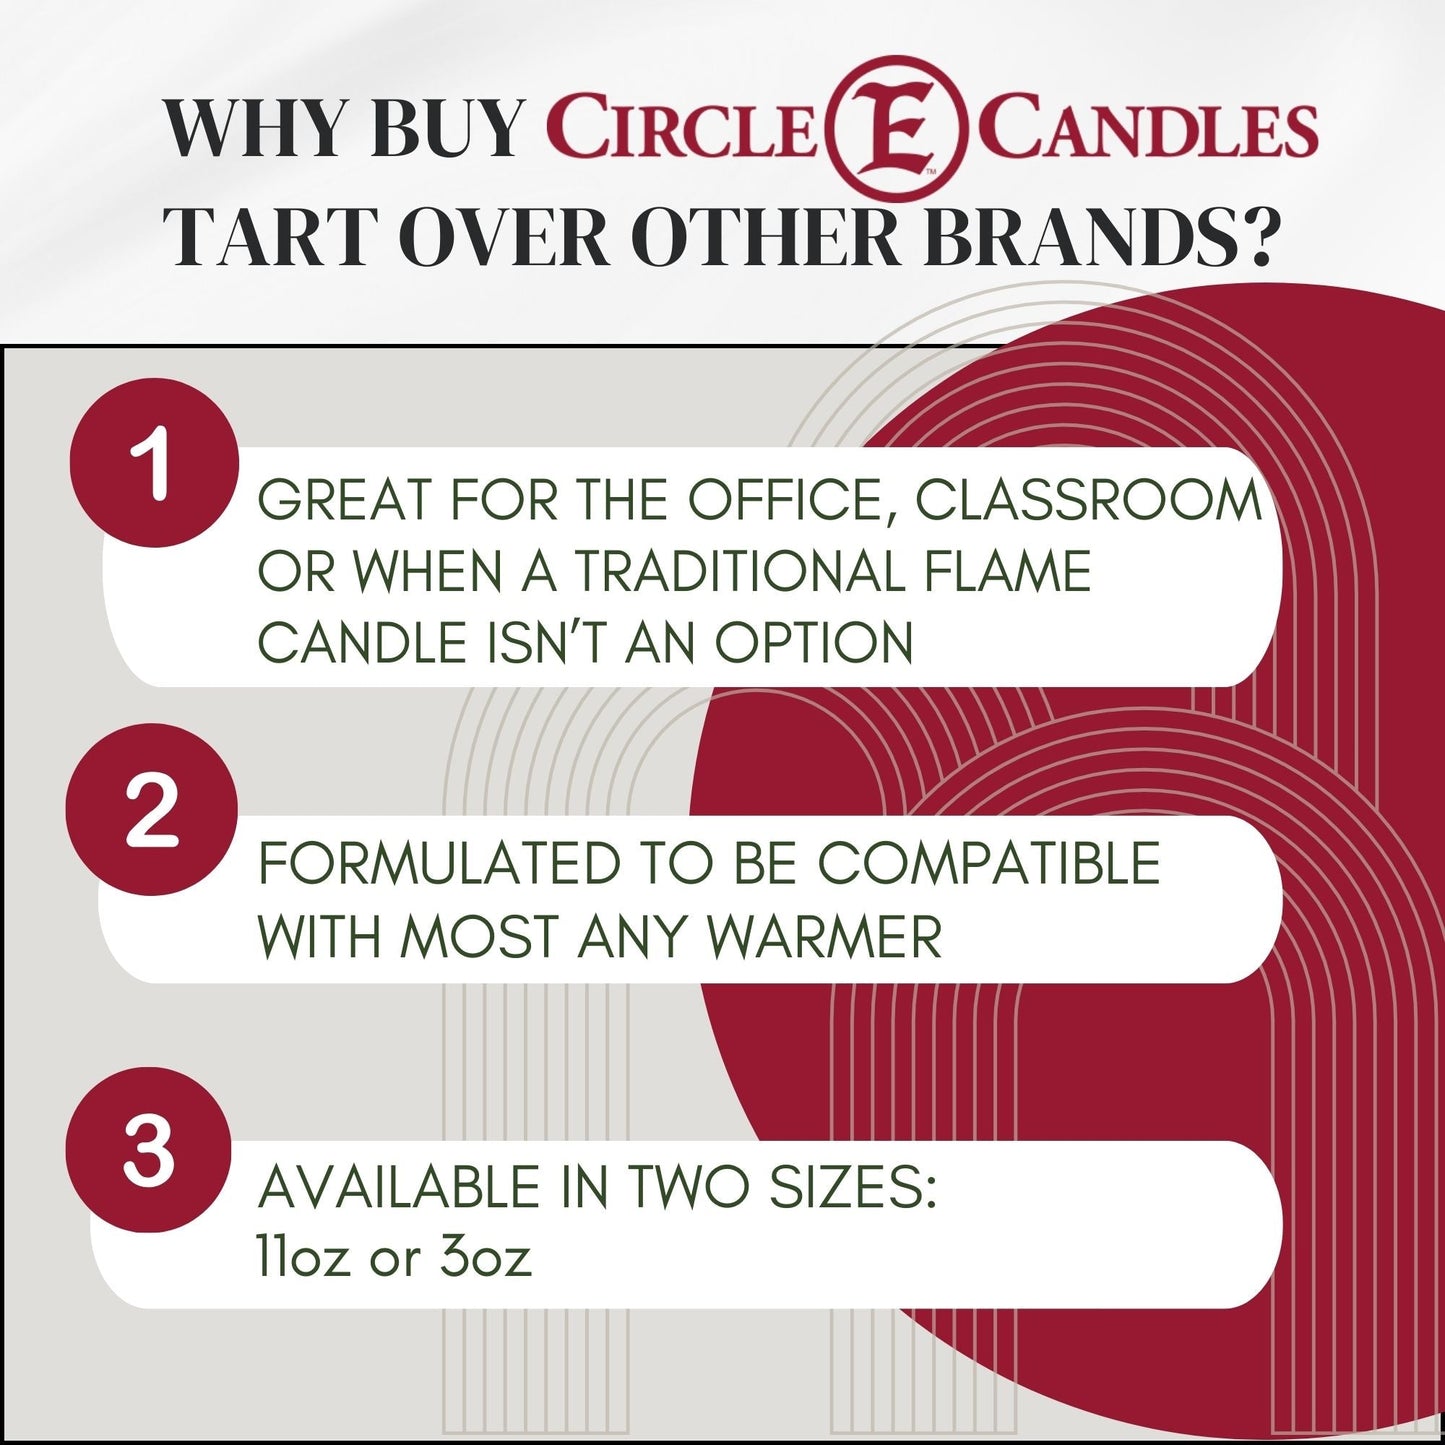 Why Buy Circle E Candles Tarts